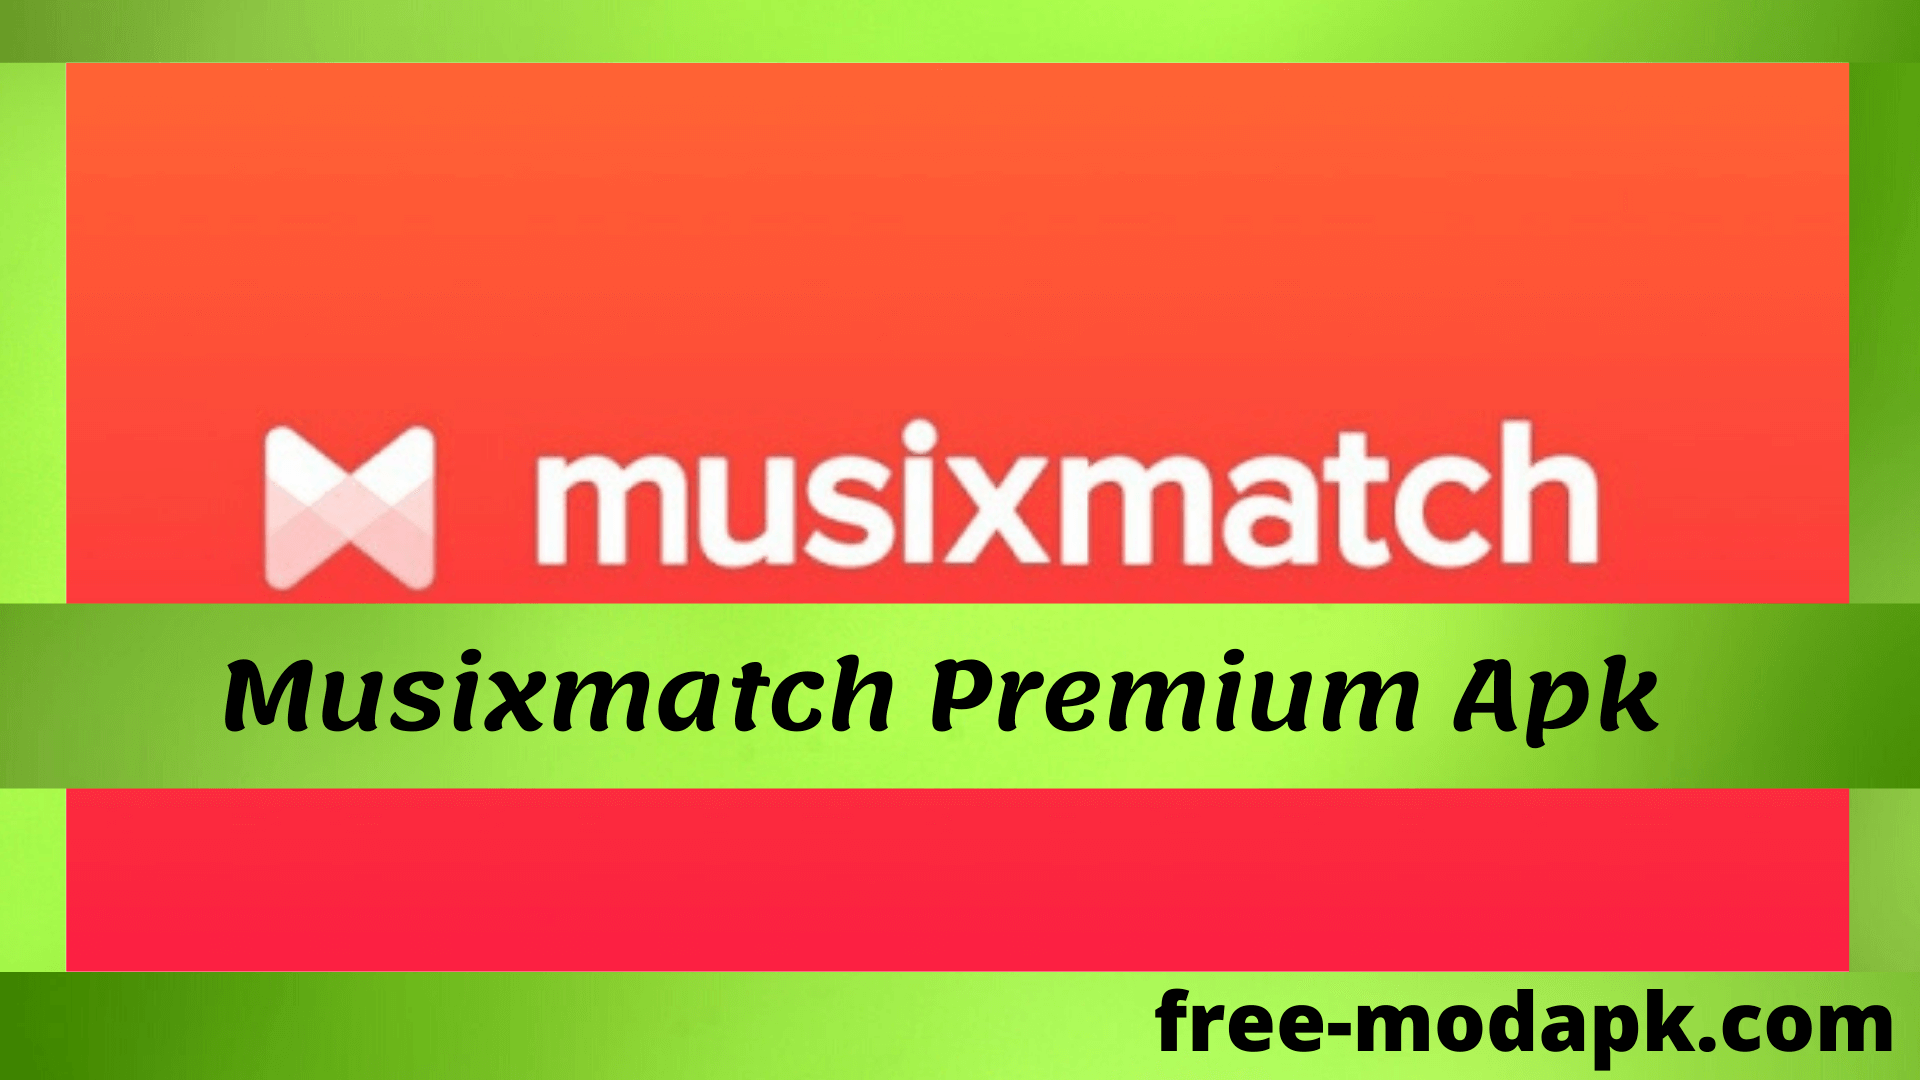 musixmatch premium apk